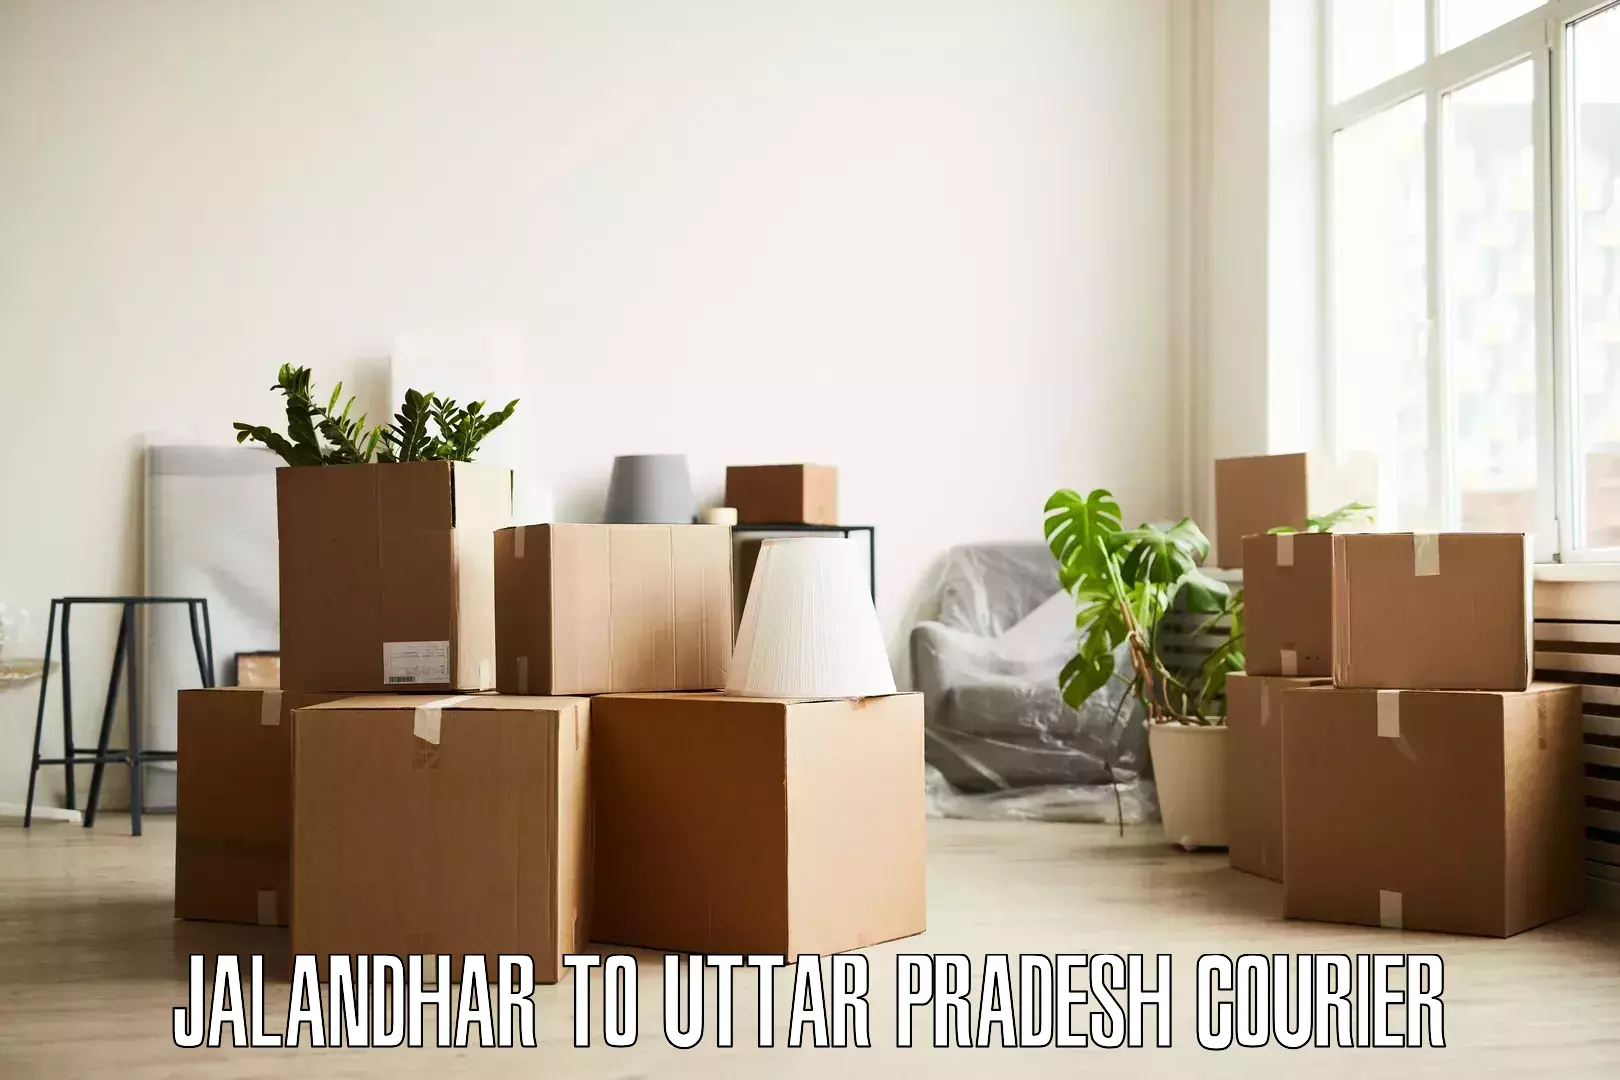 Furniture transport solutions Jalandhar to Malihabad